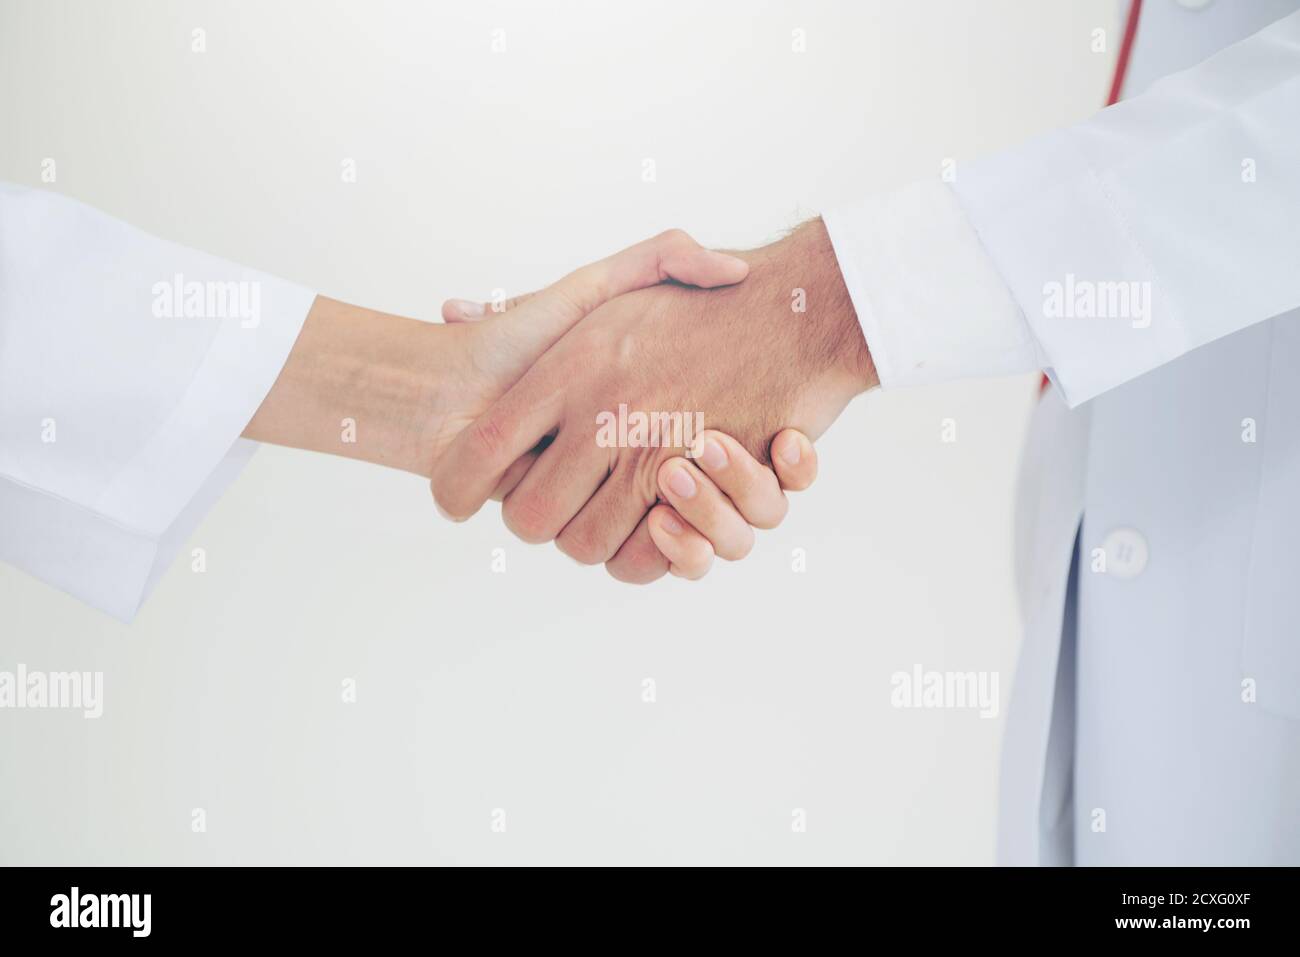 Médecin sur fond blanc donnant la poignée de main à un autre médecin montrant le succès et le travail d'équipe des professionnels de la santé. Gros plan sur les médecins Banque D'Images